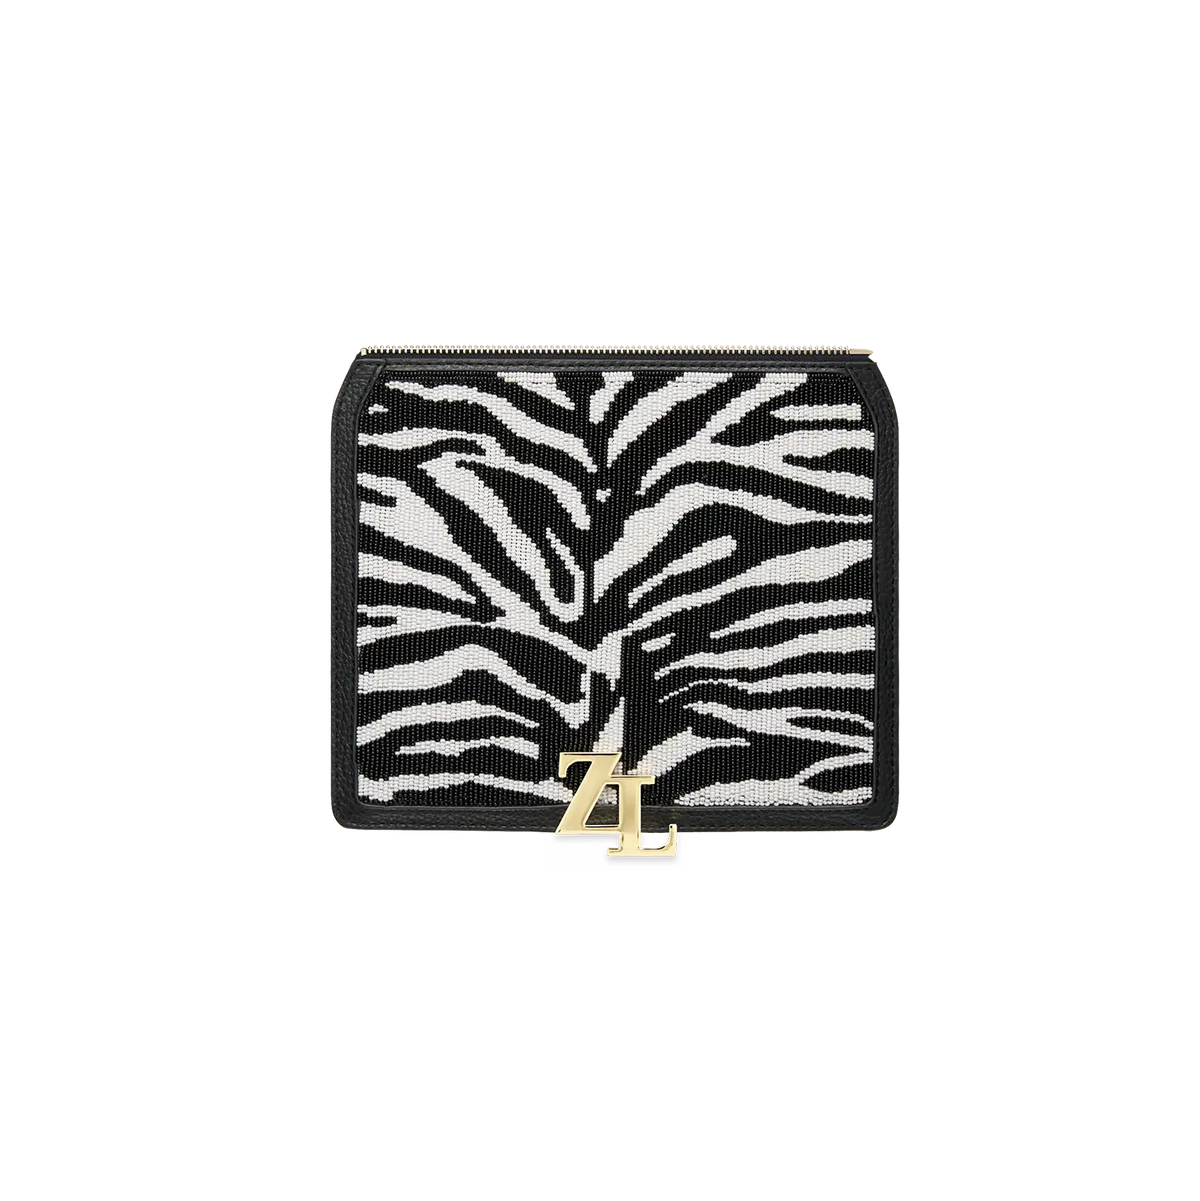 Wechselklappe - Zebra Crush - schwarz-weiß